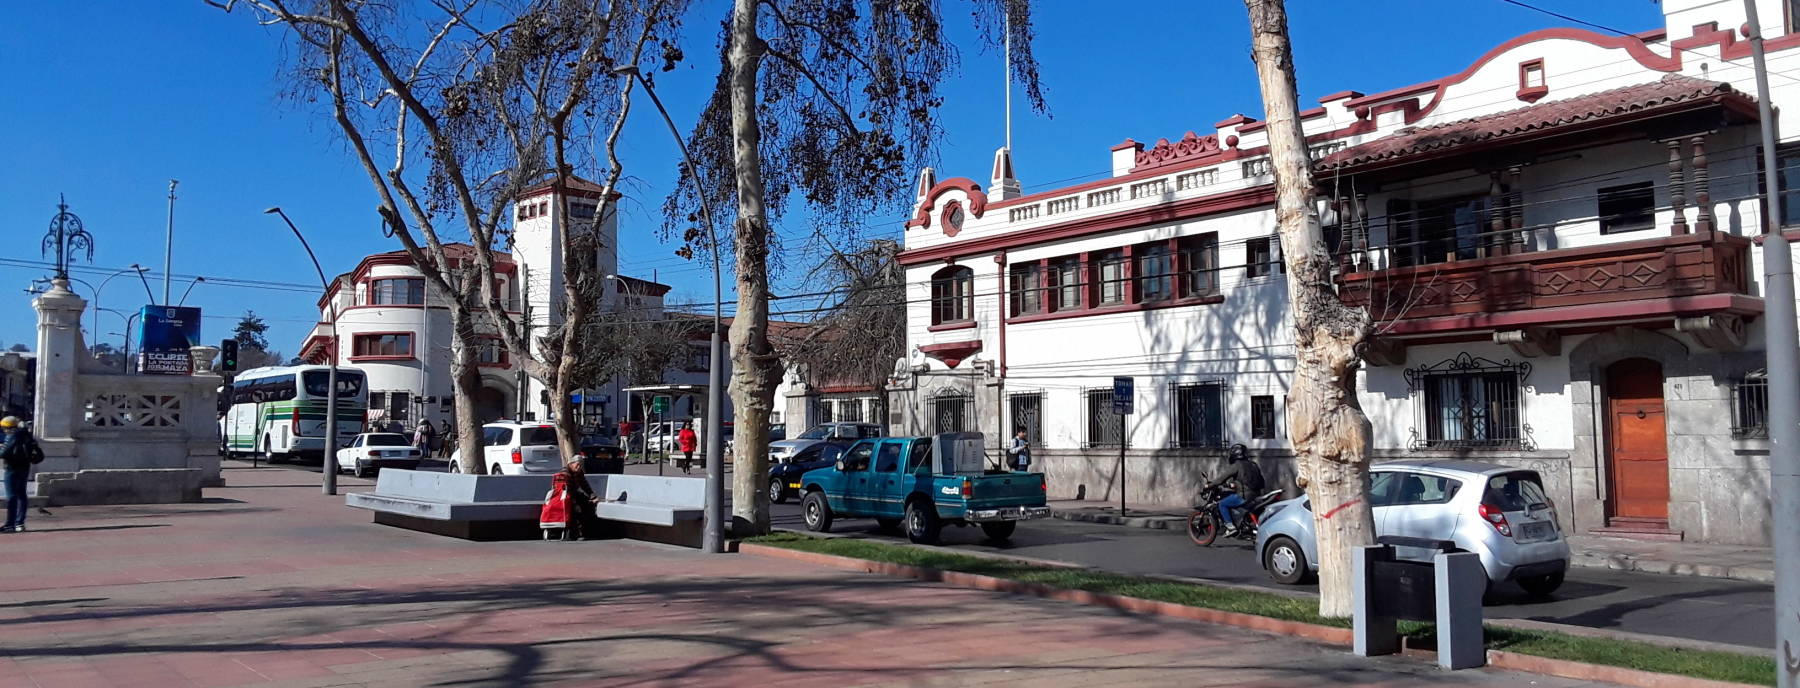 Avienda O'Higgins in La Serena, Chile.